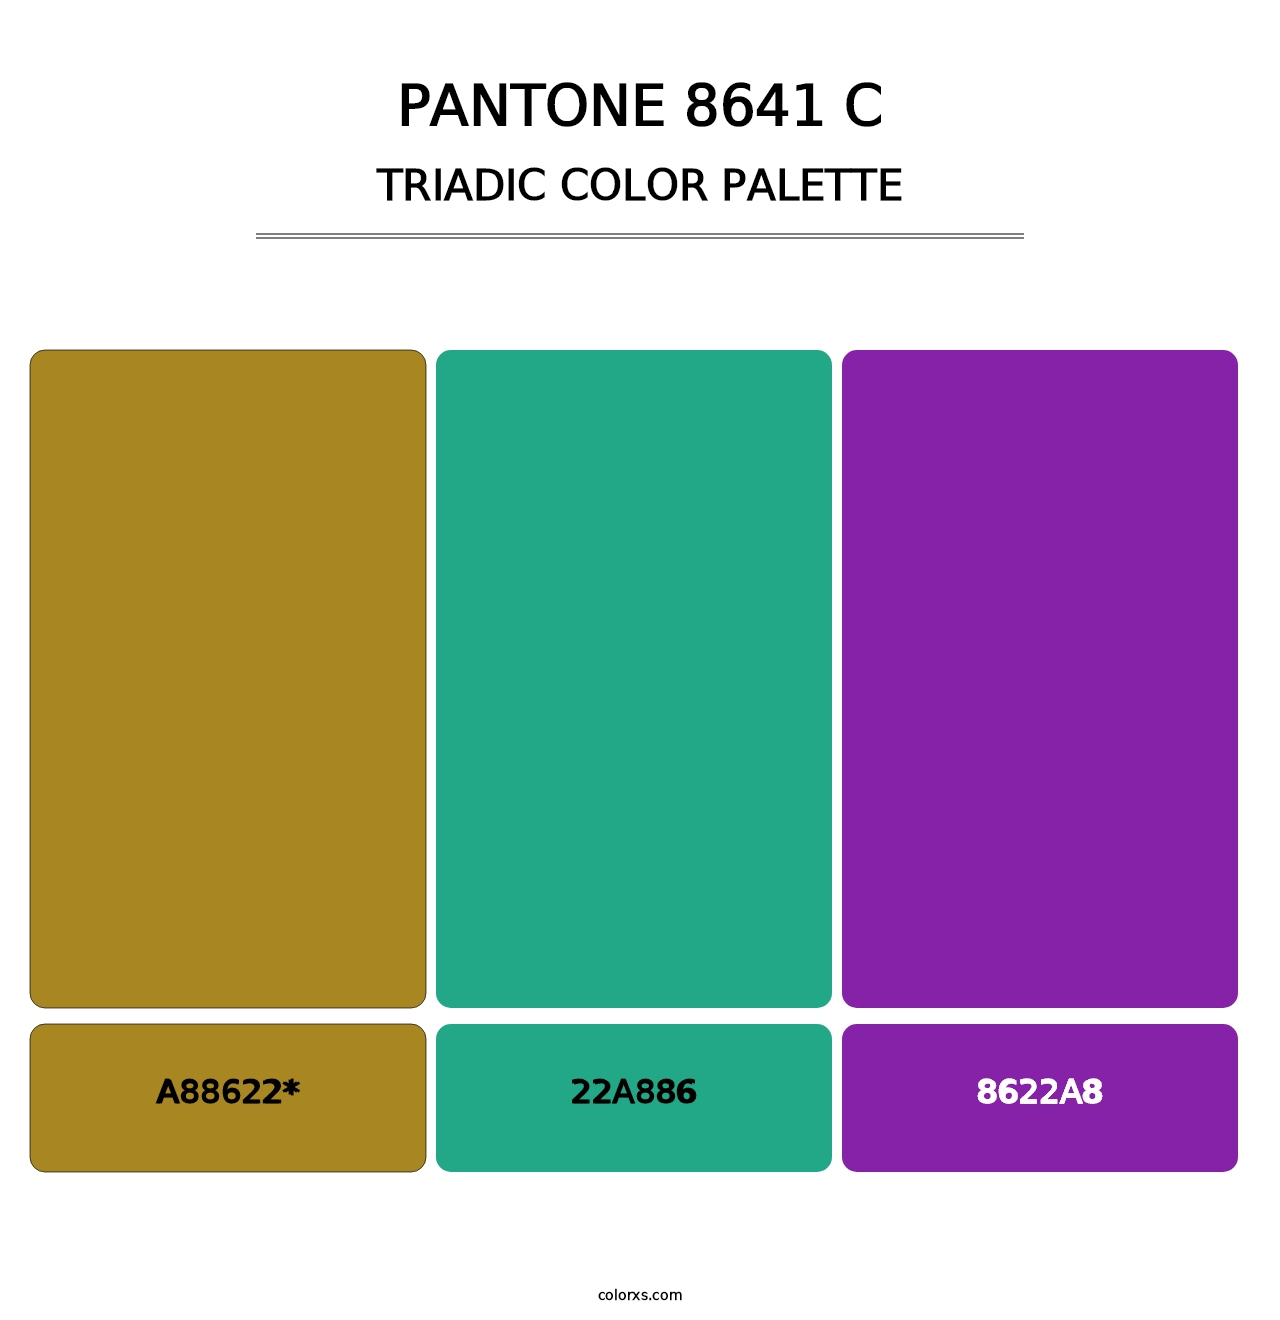 PANTONE 8641 C - Triadic Color Palette